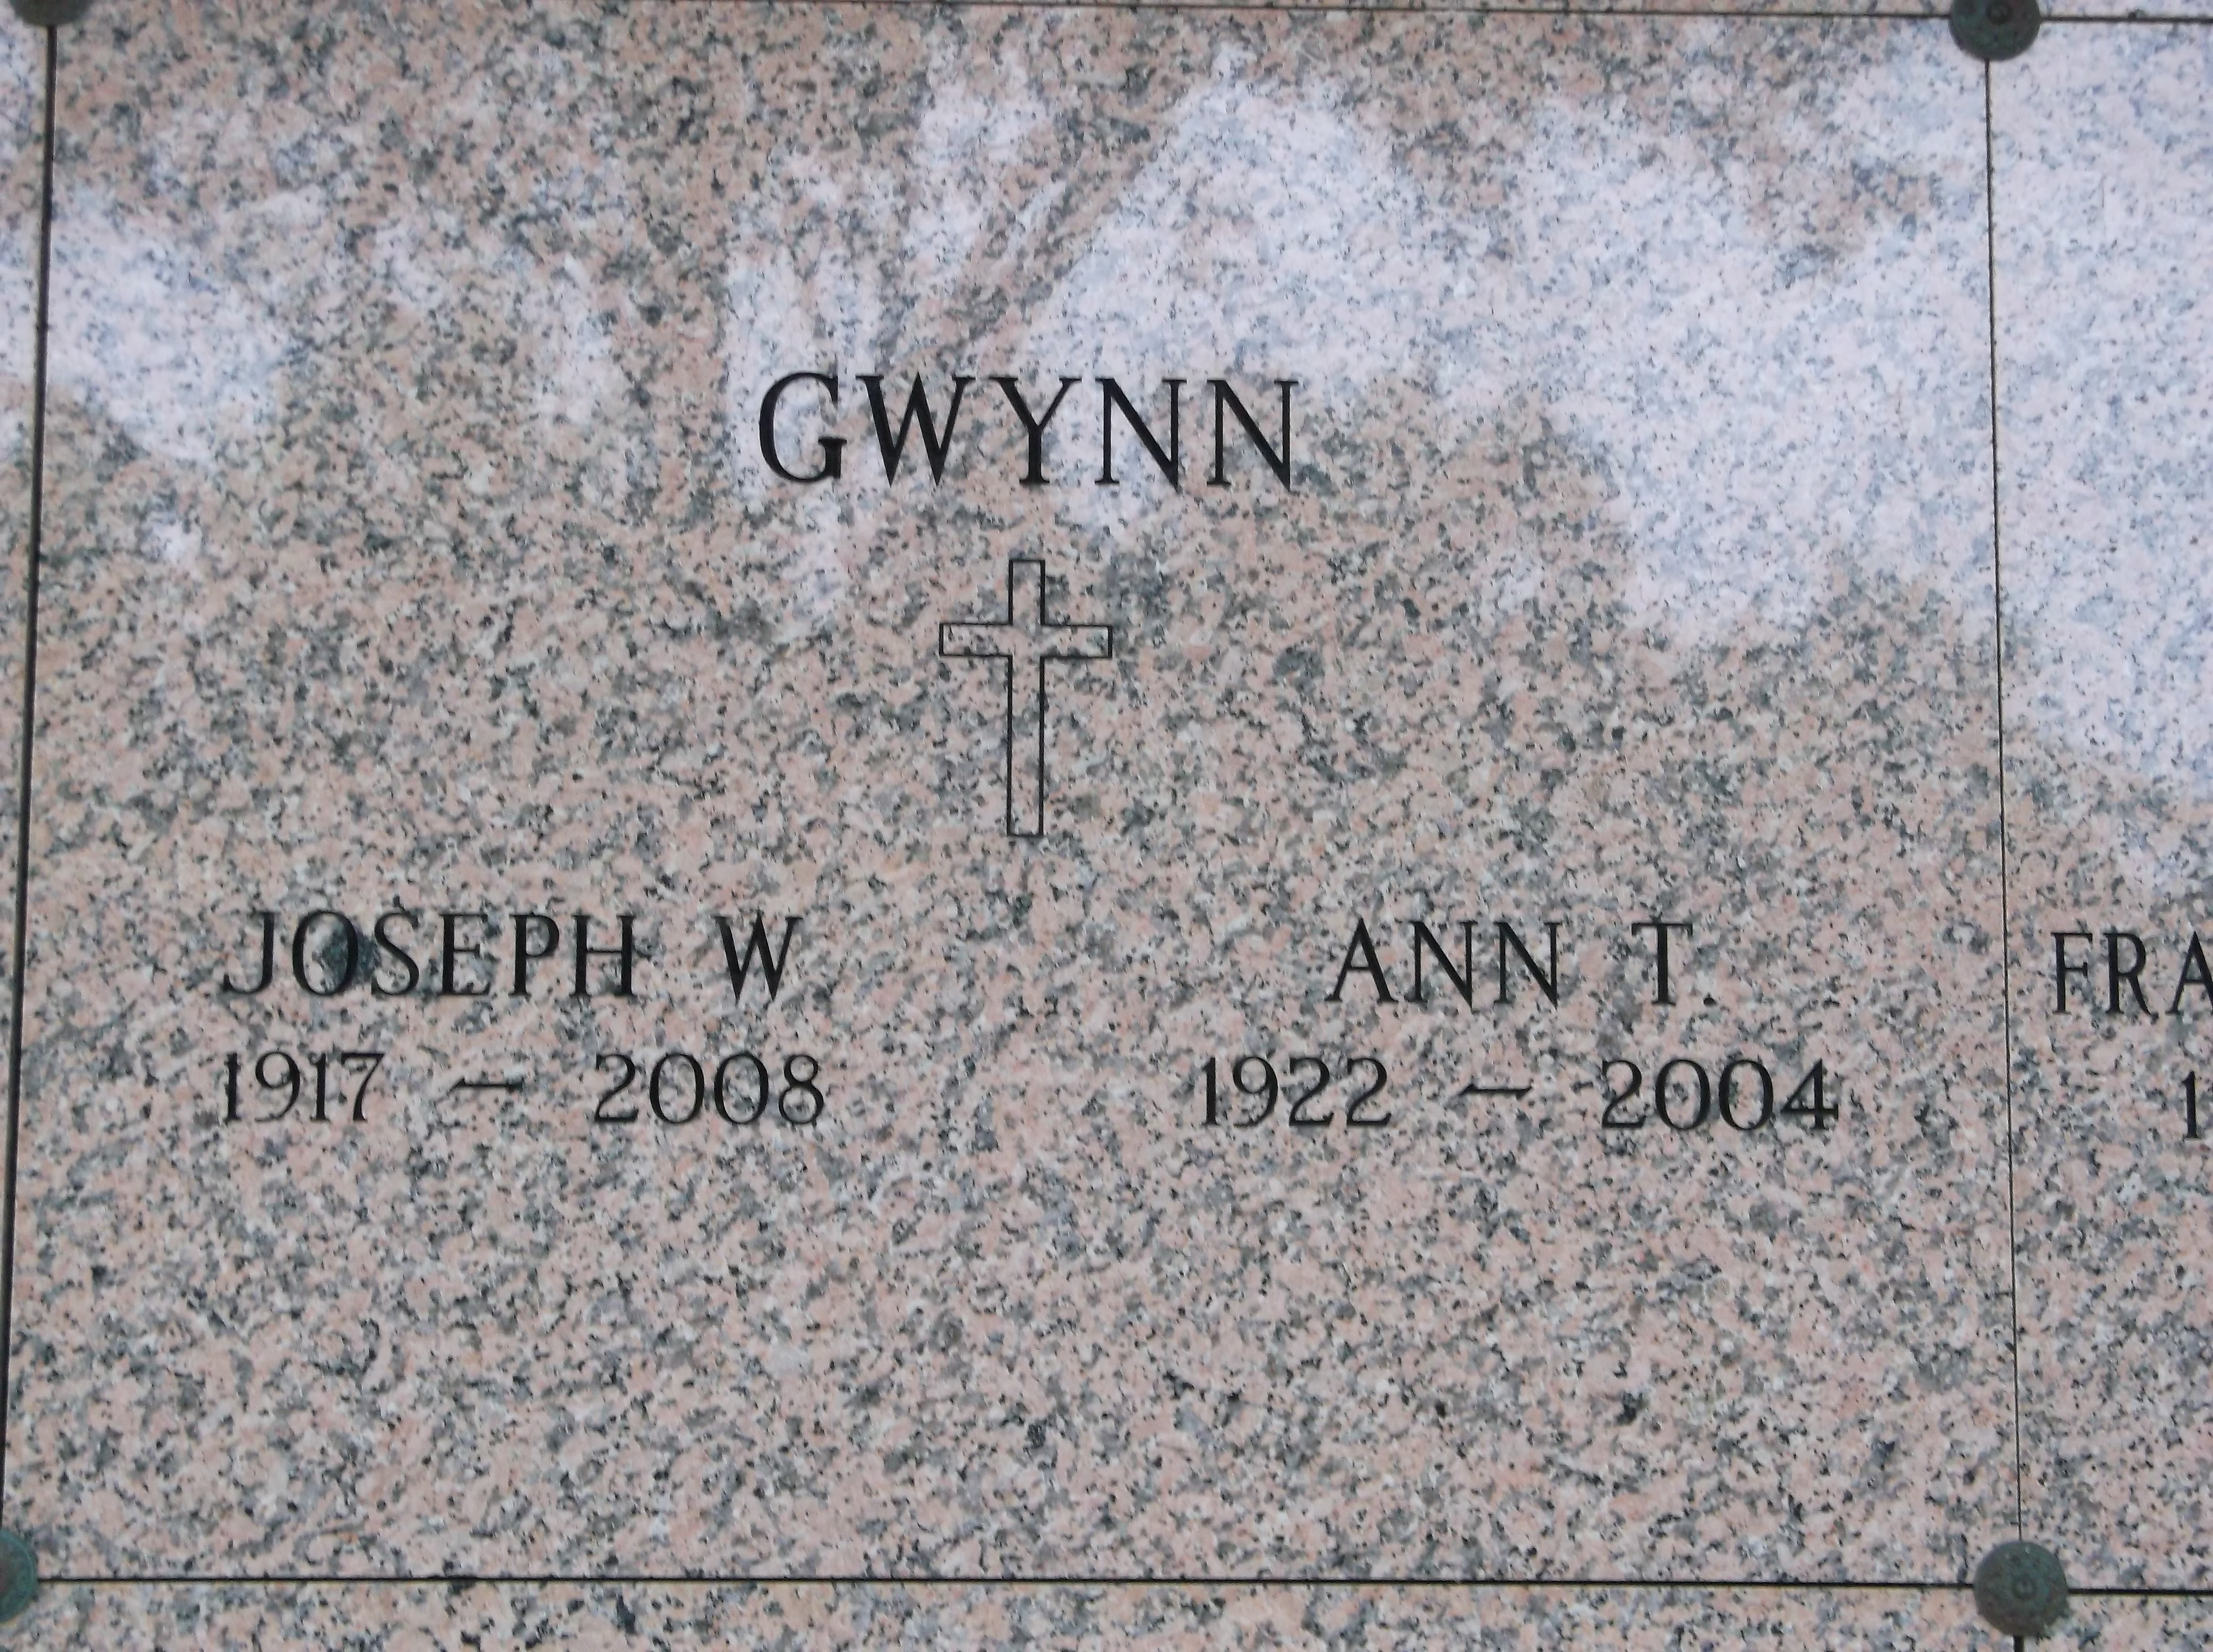 Joseph W Gwynn